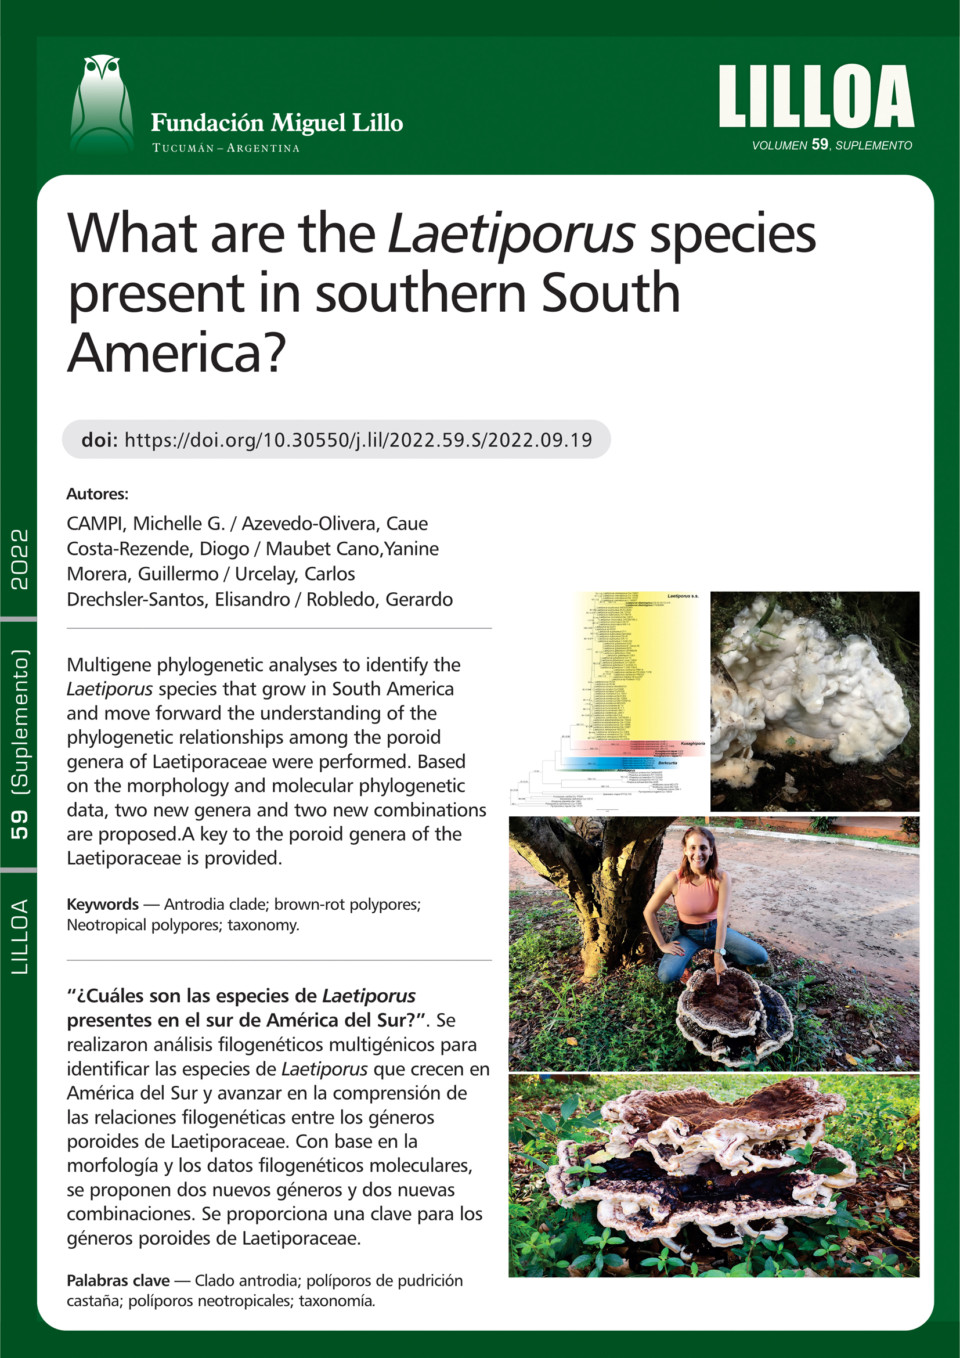 ¿Cuáles son las especies de Laetiporus presentes en el sur de América del Sur?